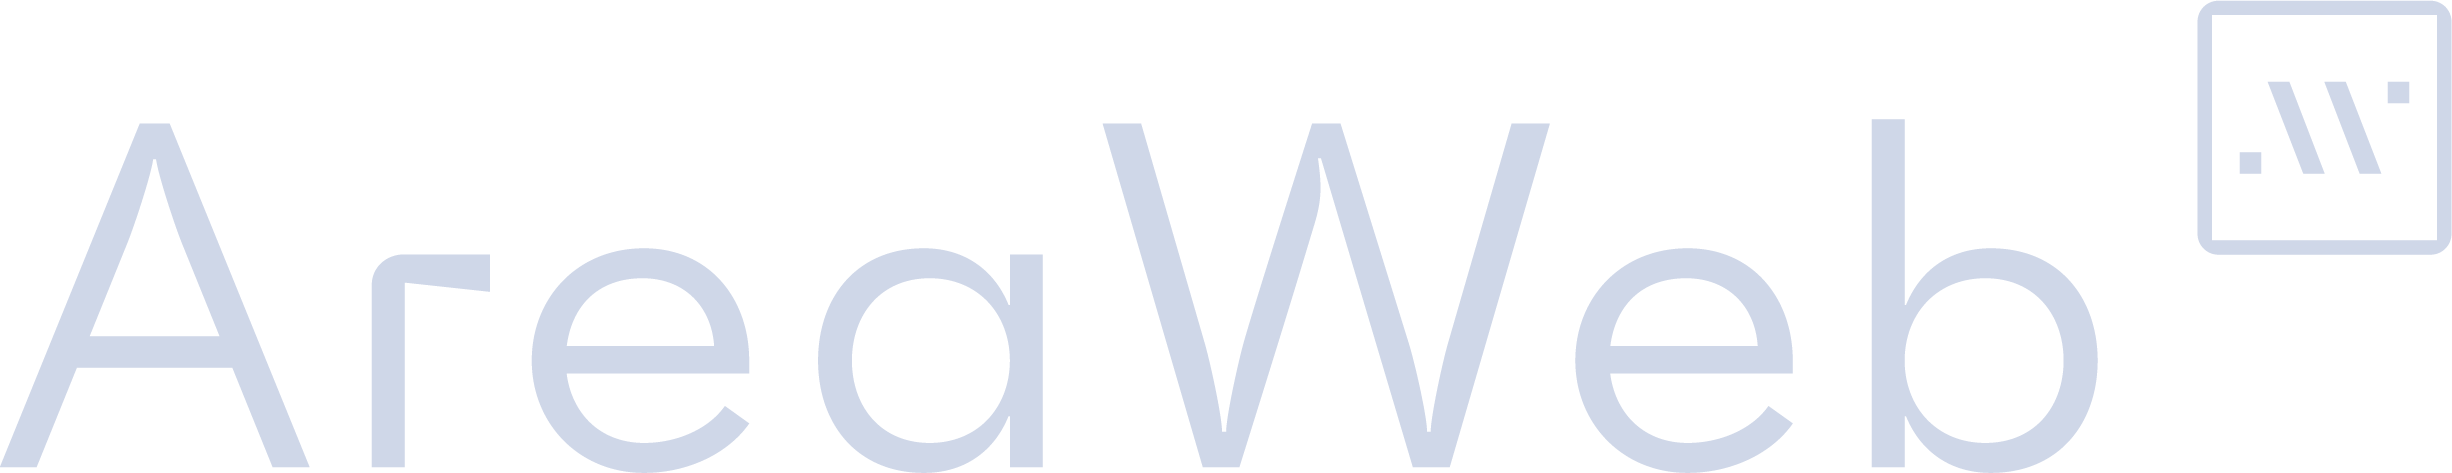 web agency imola - area web - logo